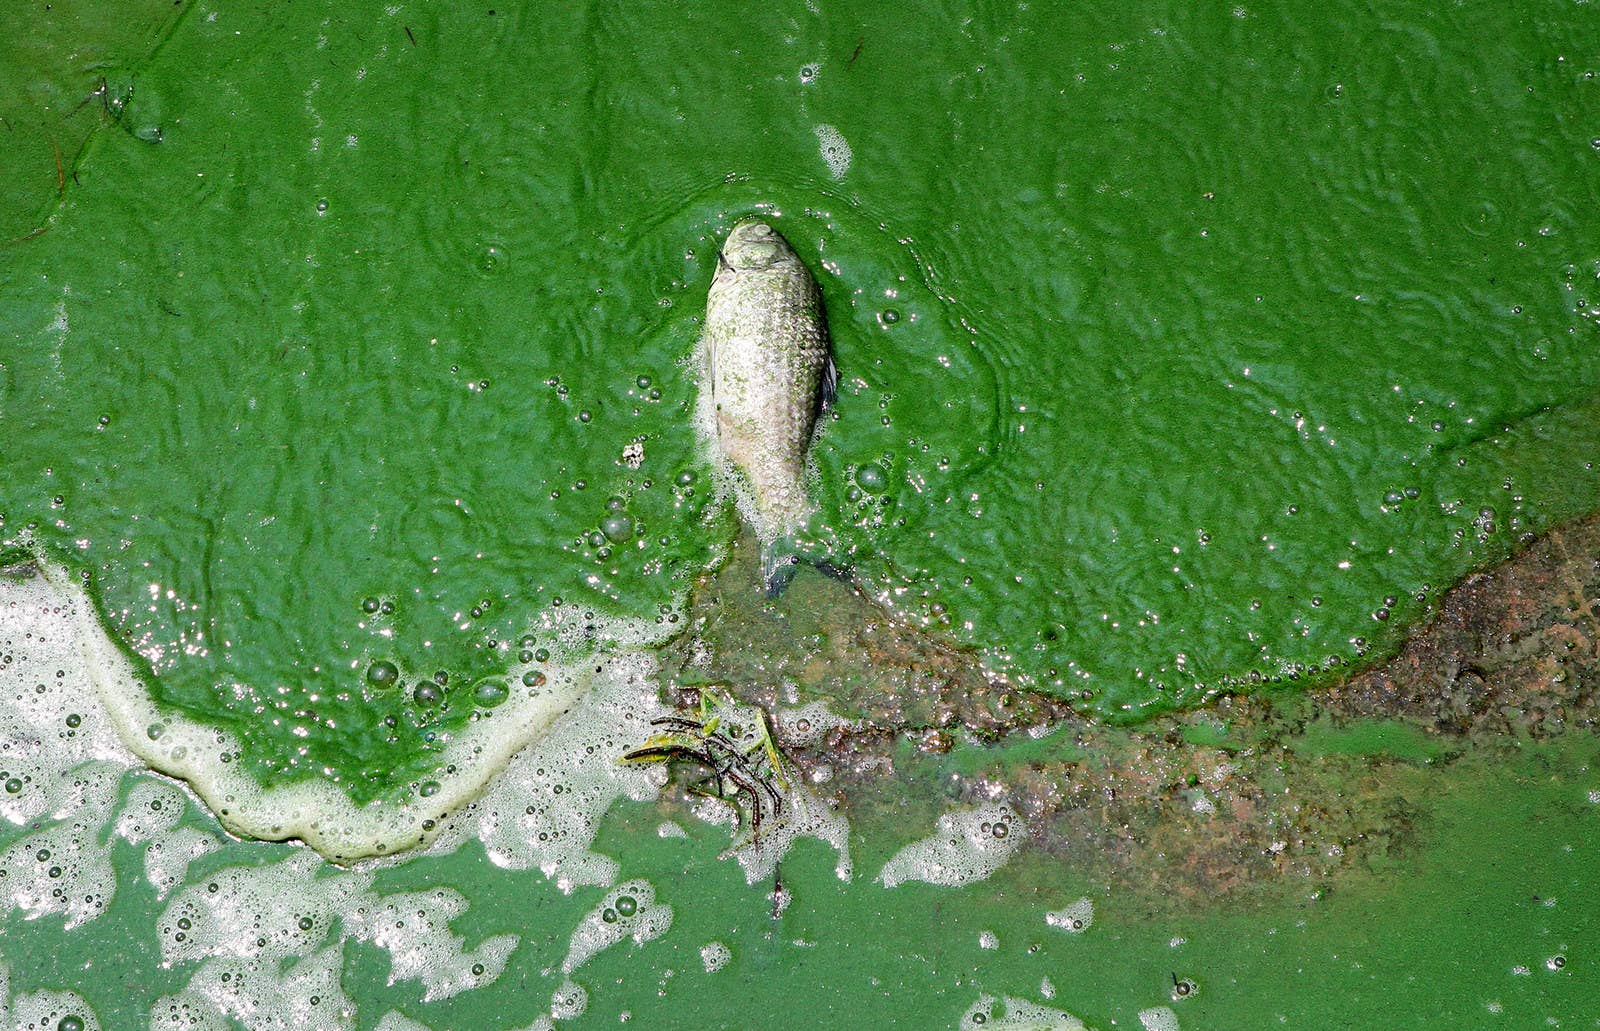 中国・昆明市の滇池が藍藻による汚染で緑色に。死んだ魚が水面に浮かんでいる。(2015年7月12日)